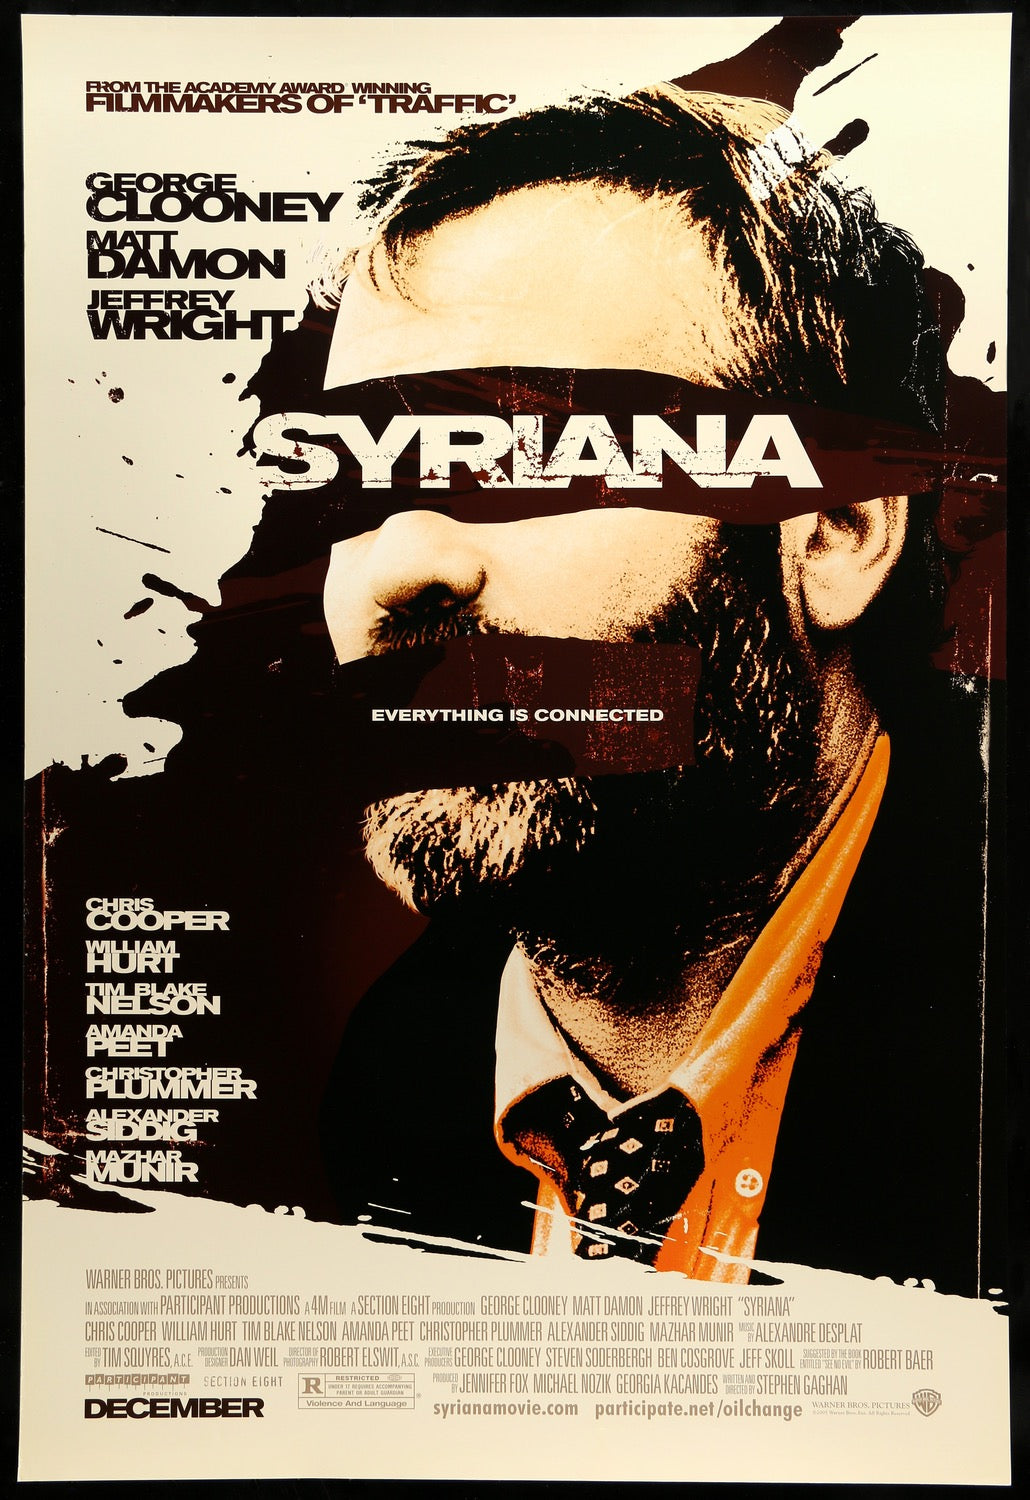 Syriana (2005) original movie poster for sale at Original Film Art